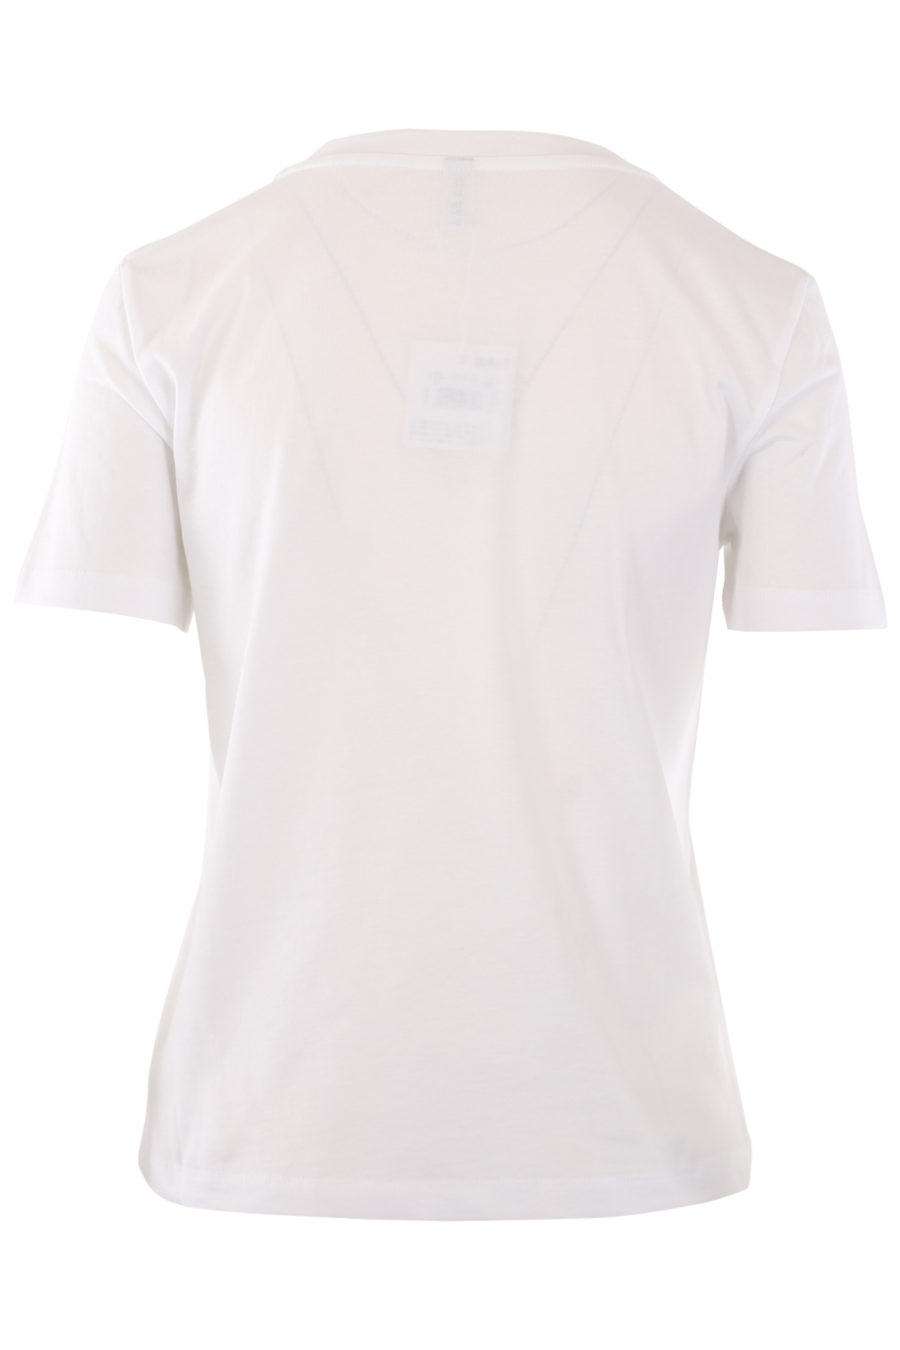 Camiseta blanca con logo tropical - IMG 0814